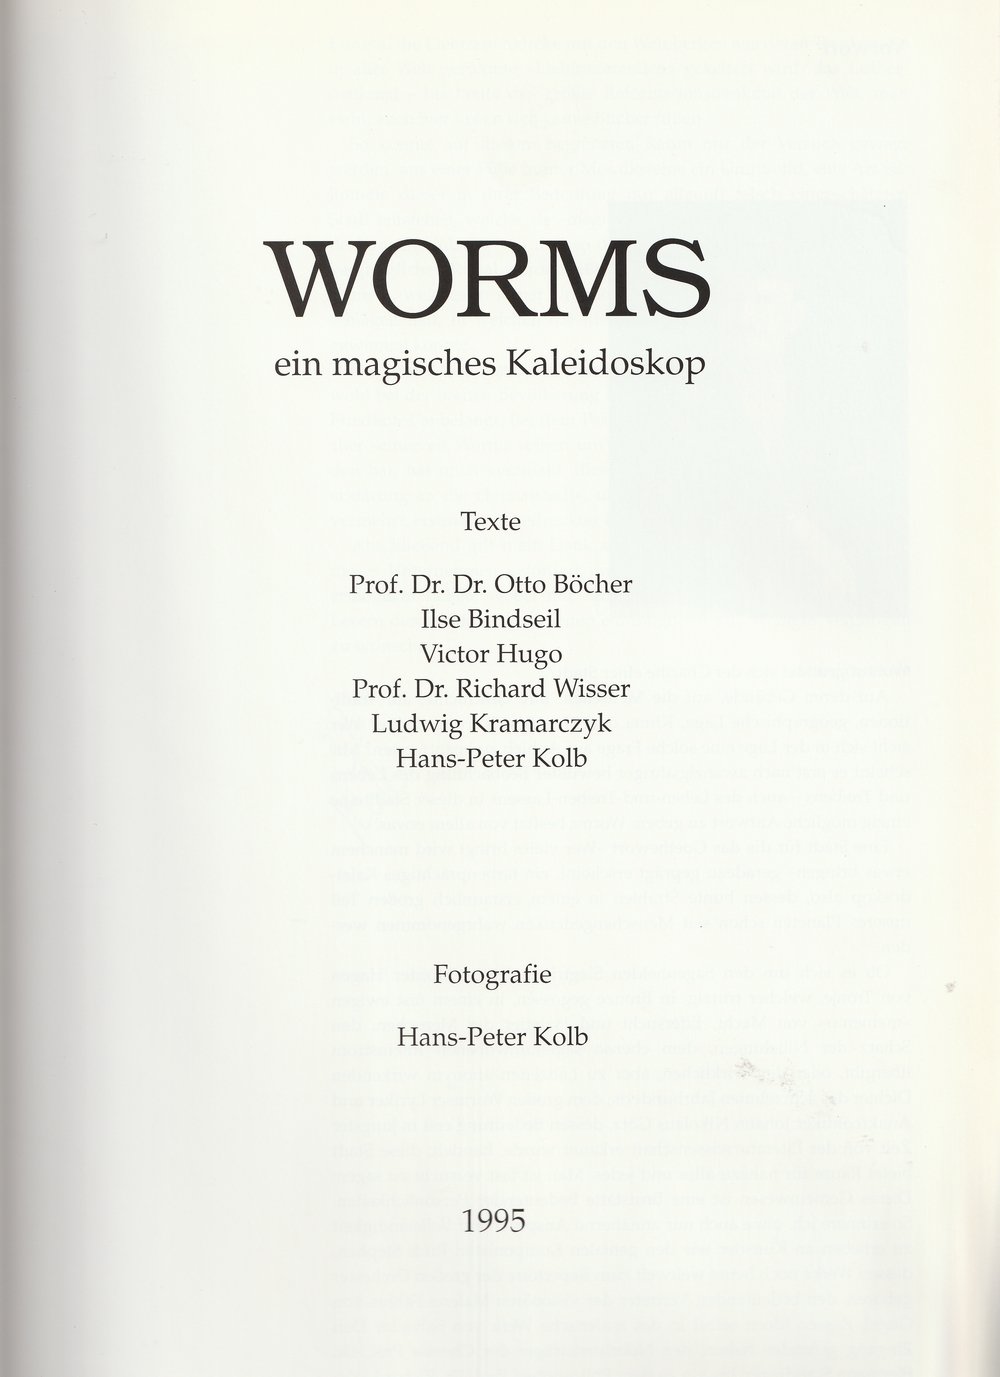 Worms - ein magisches Kaleidoskop (Kulturverein Guntersblum CC BY-NC-SA)